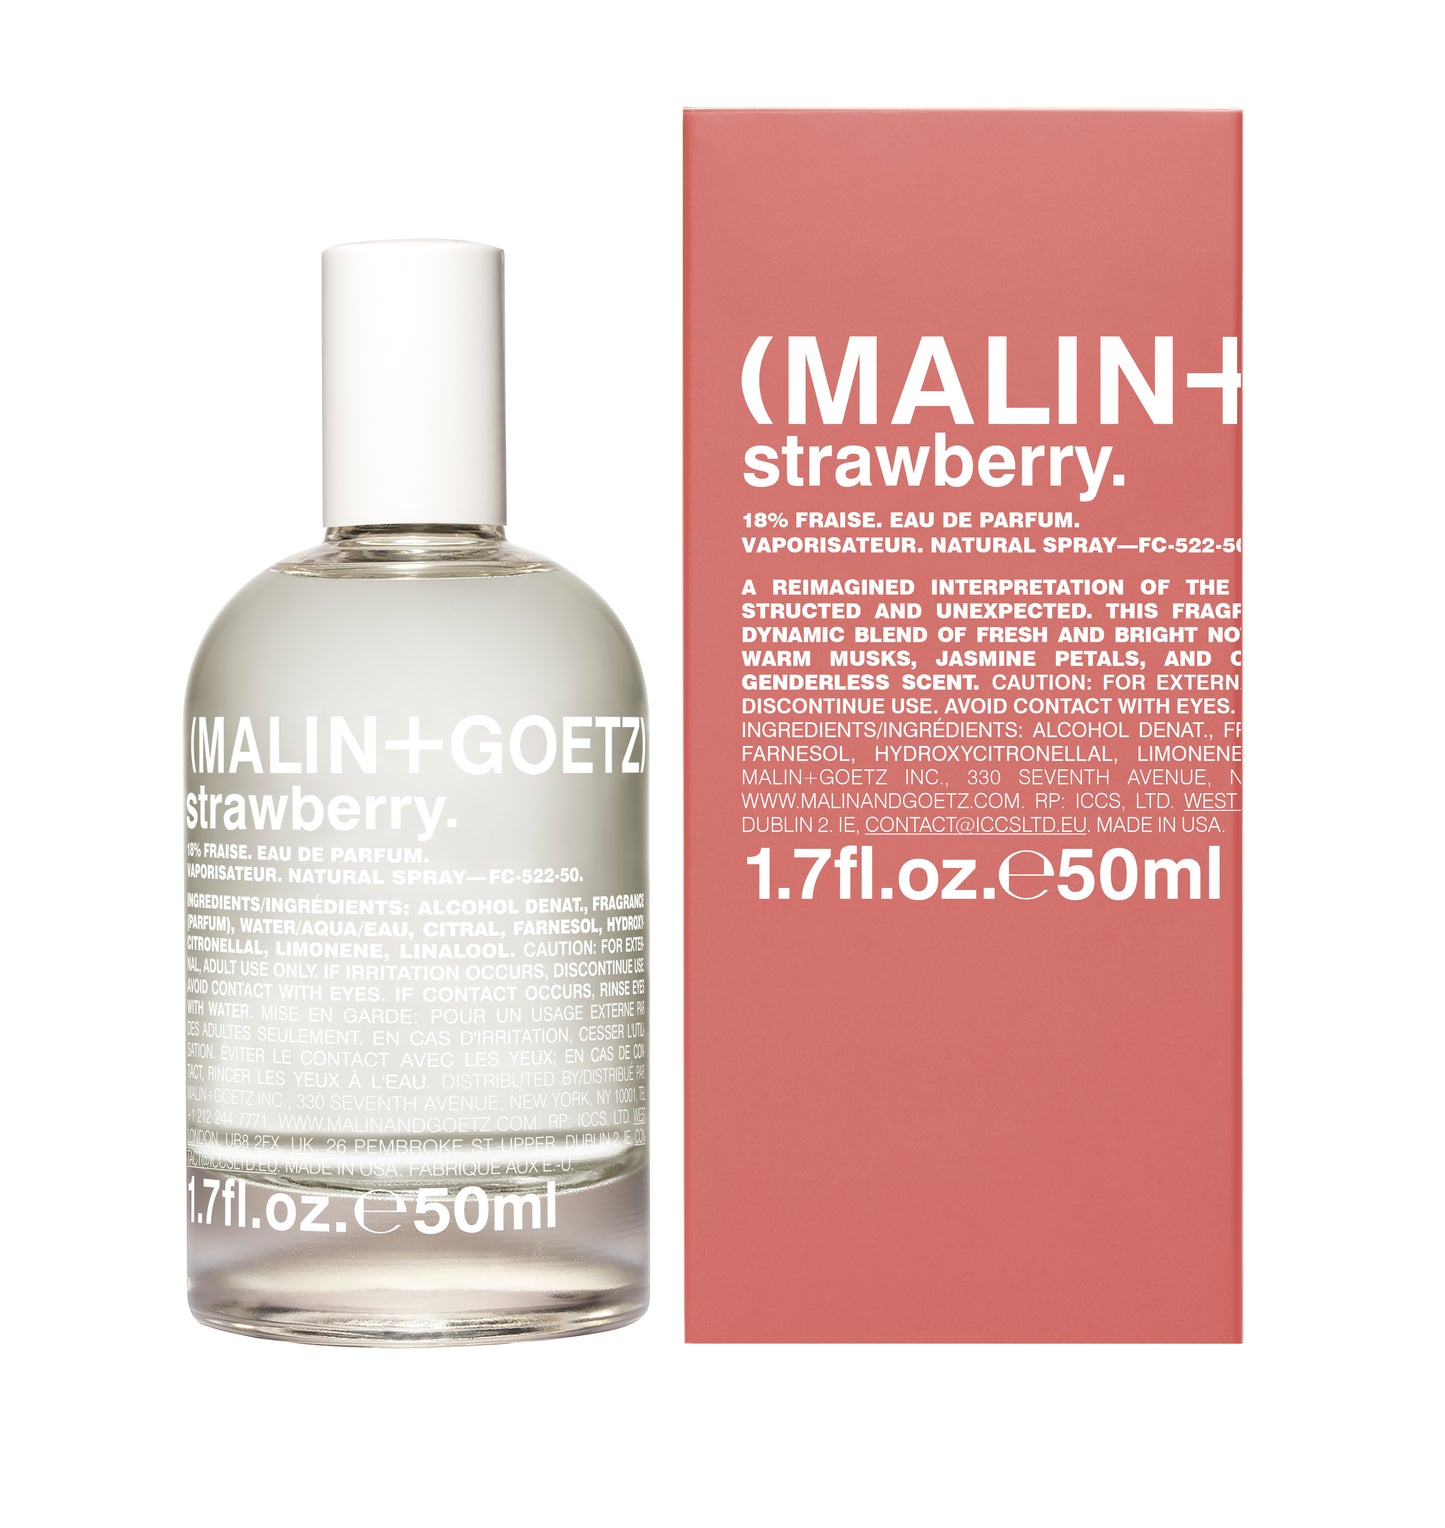 (MALIN+GOETZ) Strawberry EDP 50ml